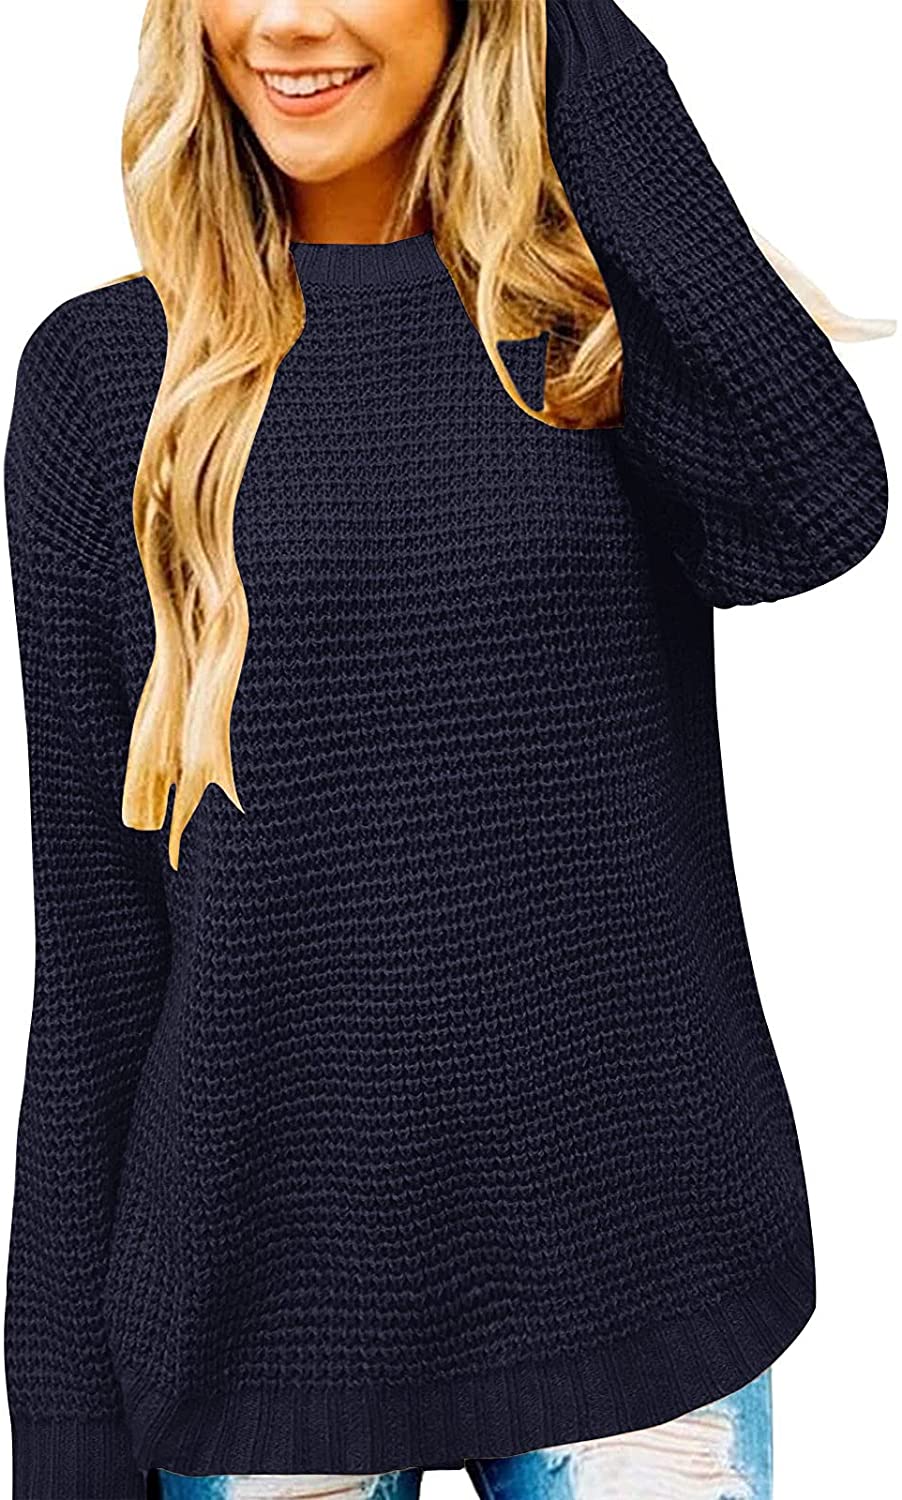 MEROKEETY Women's Long Sleeve Waffle Knit Sweater Crew Neck Solid